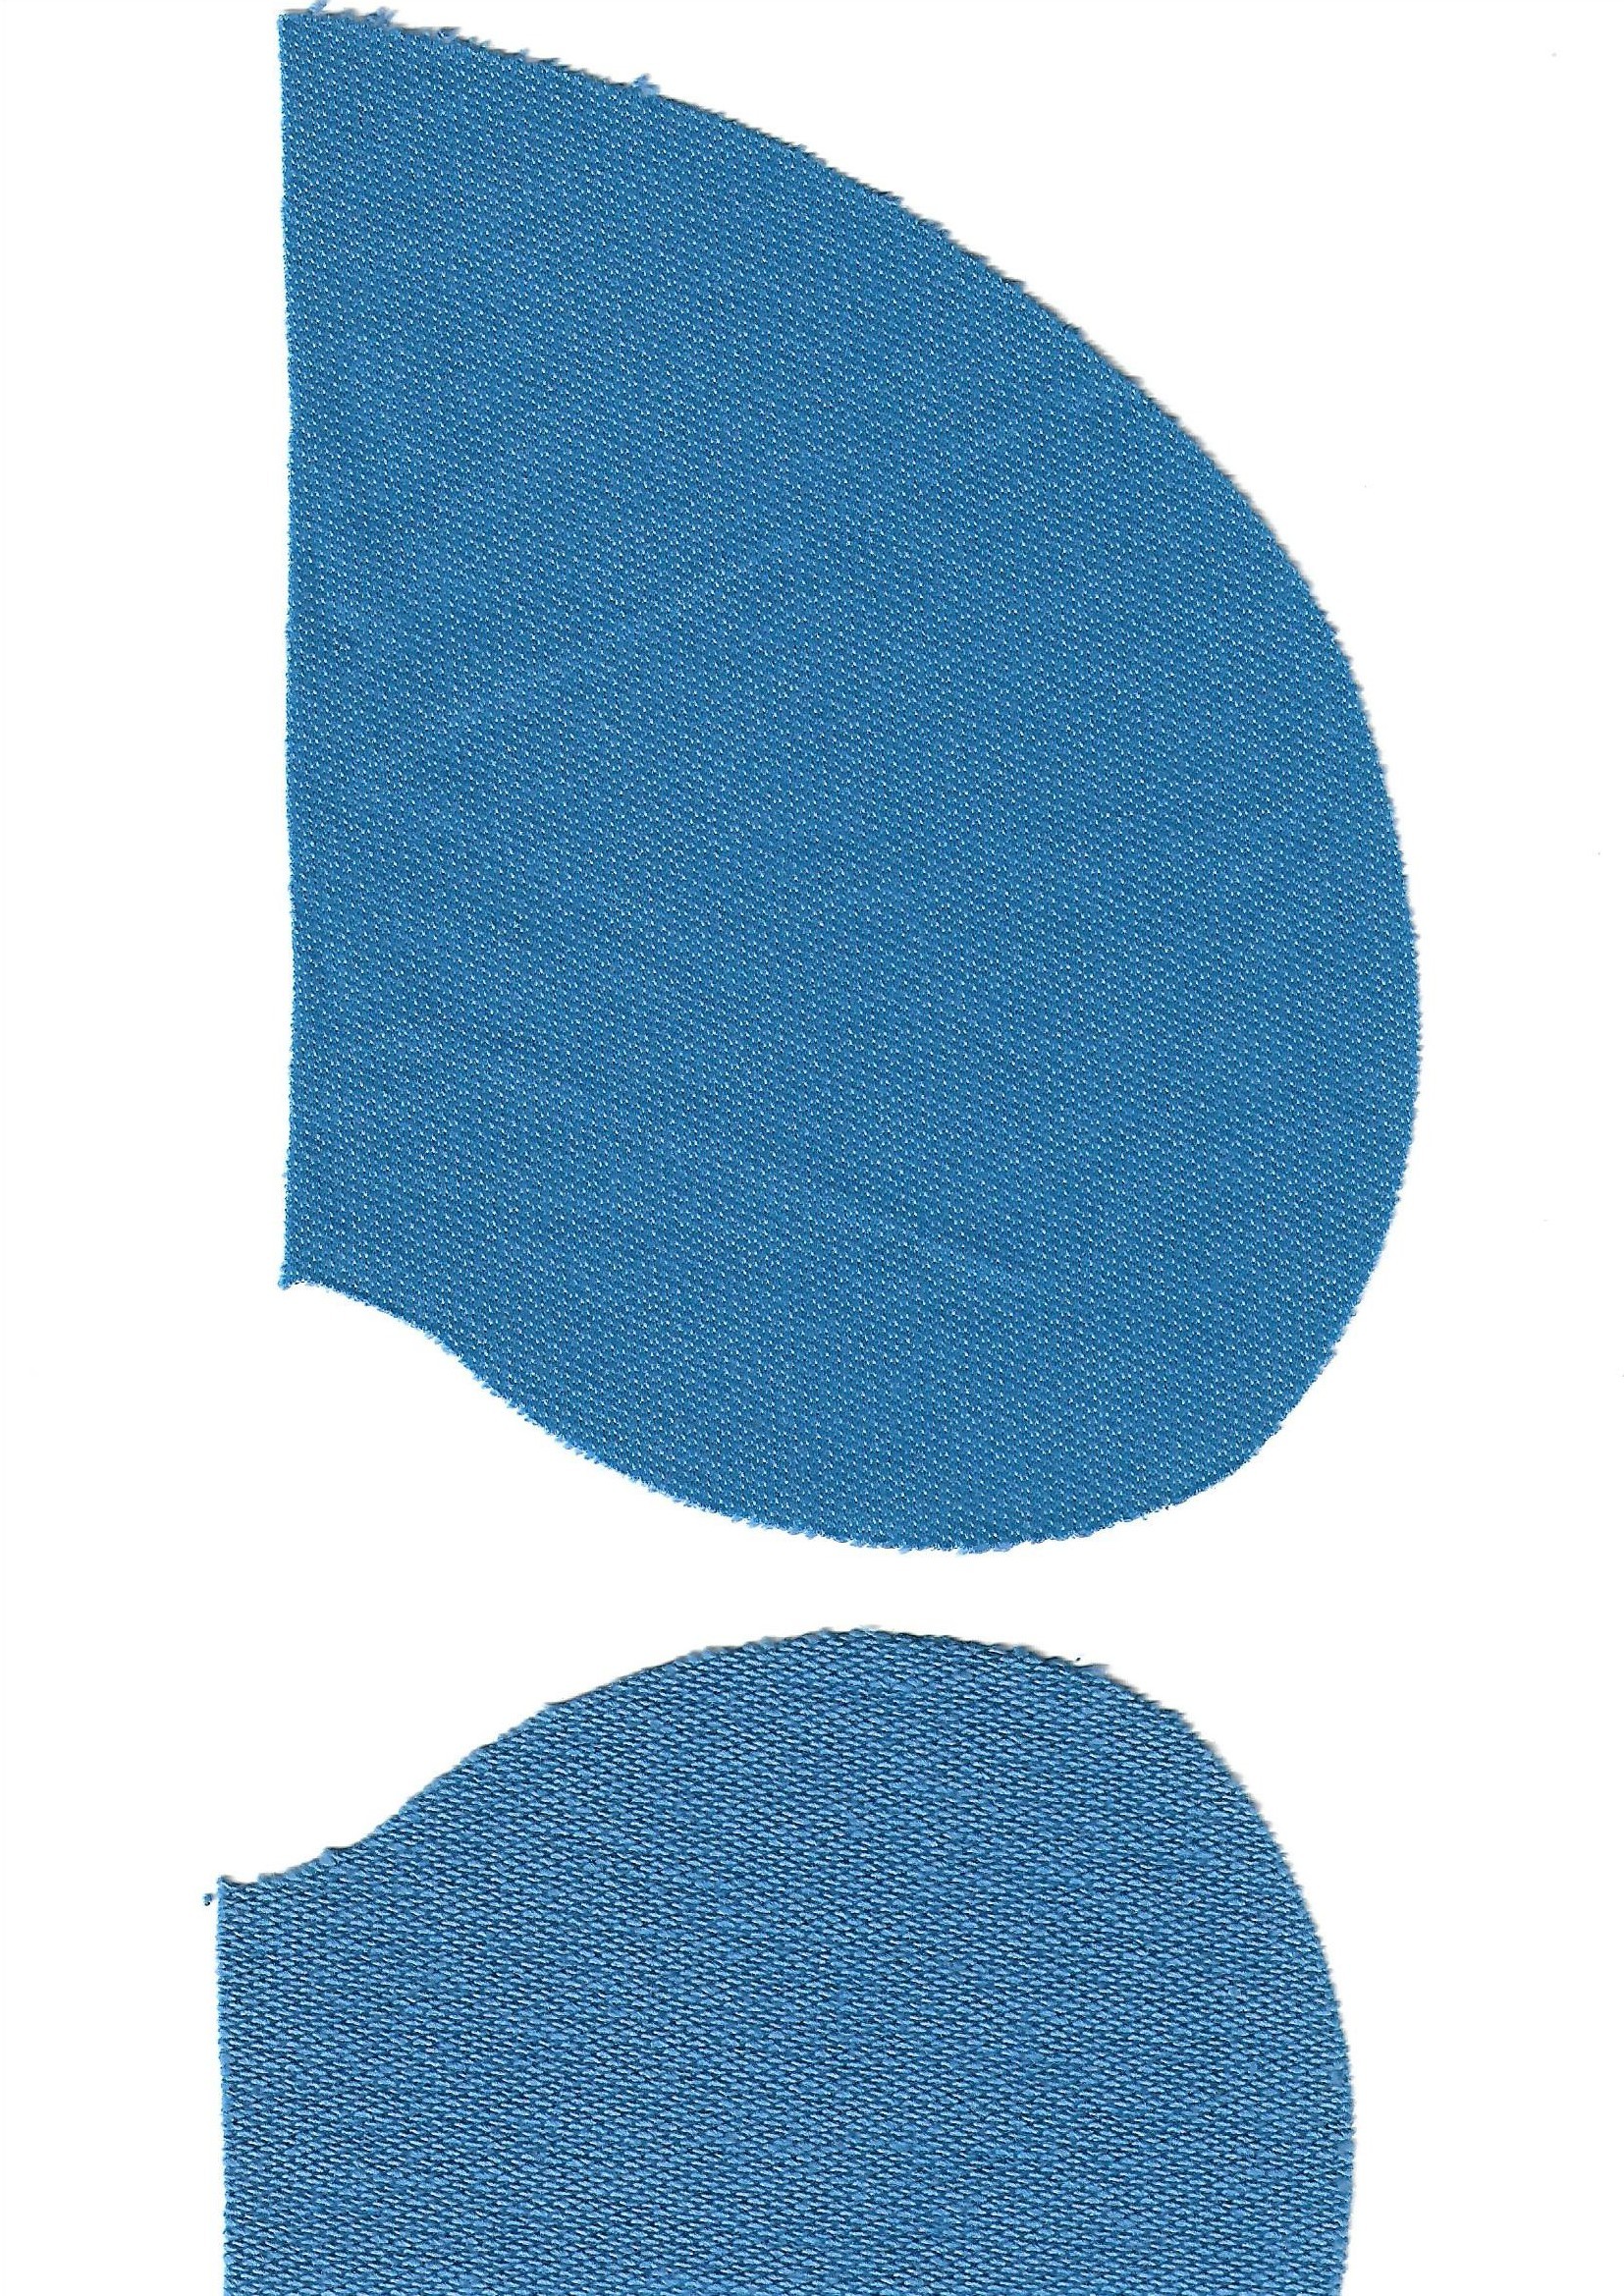 Výřez teplákovina modrá kapsa bp 2ks 16x14cm